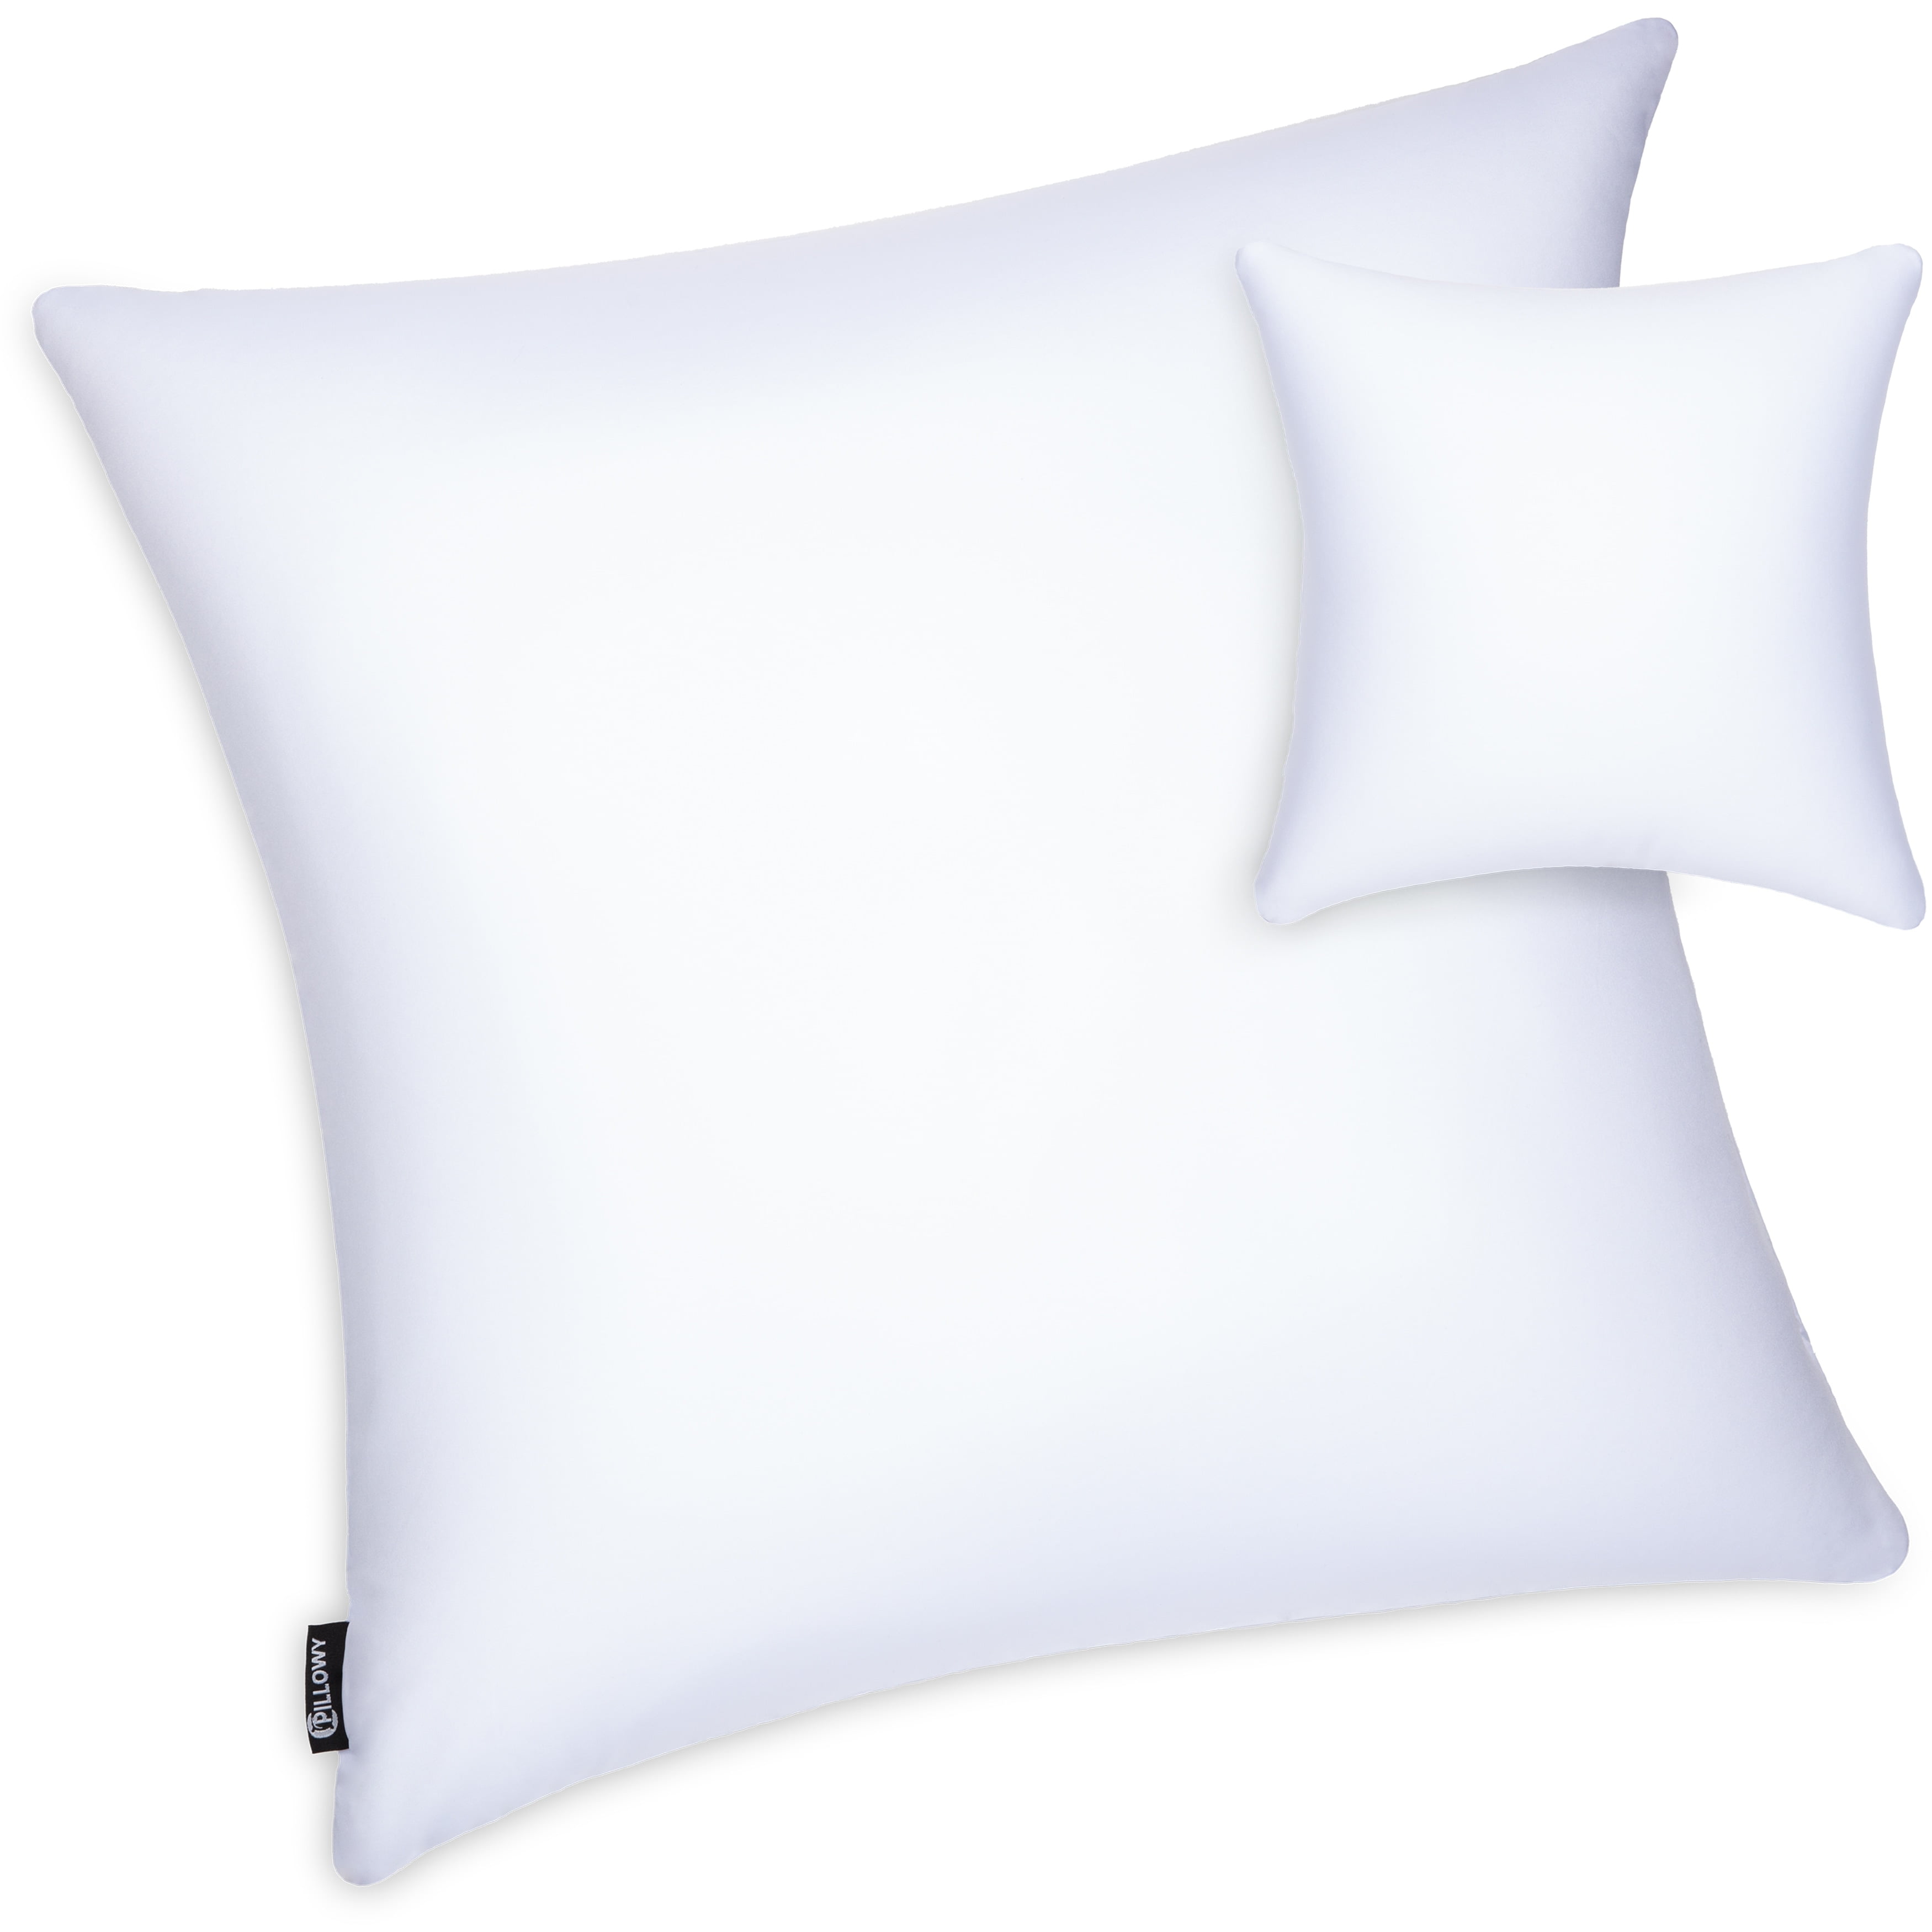 Microbead Stuffer Pillow Insert Sham Rectangle Pillow - 1 Pcs, 12 x 20